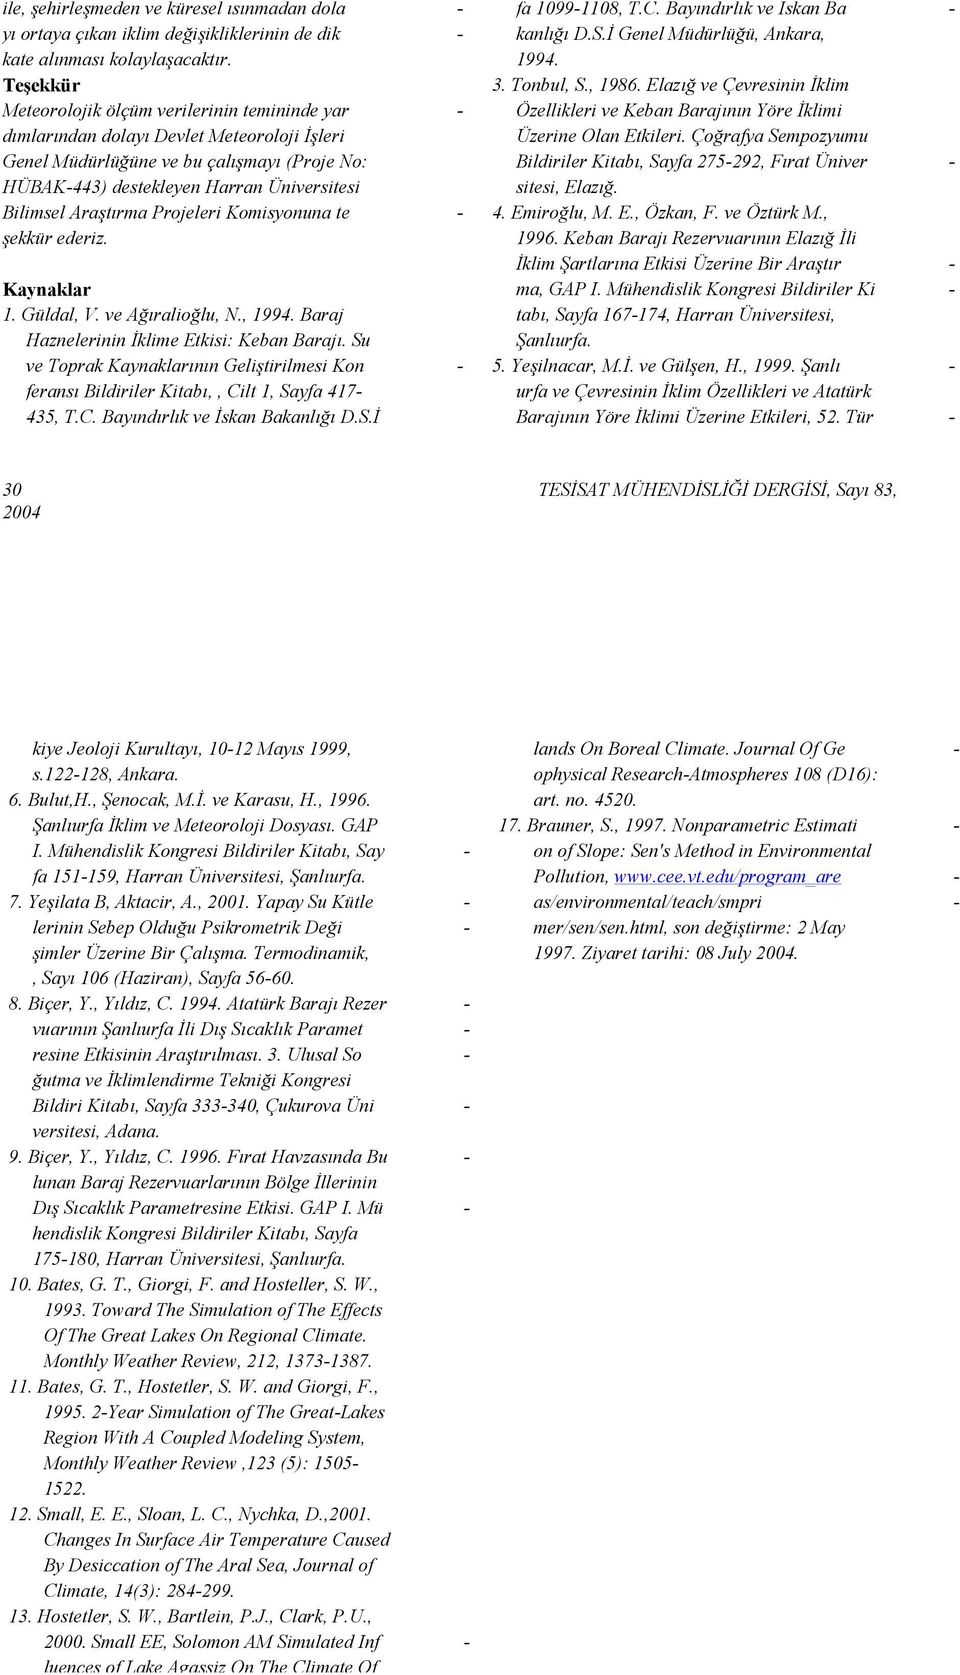 Araştırma Projeleri Komisyonuna te - şekkür ederiz. Kaynaklar 1. Güldal, V. ve Ağıralioğlu, N., 1994. Baraj Haznelerinin Đklime Etkisi: Keban Barajı.